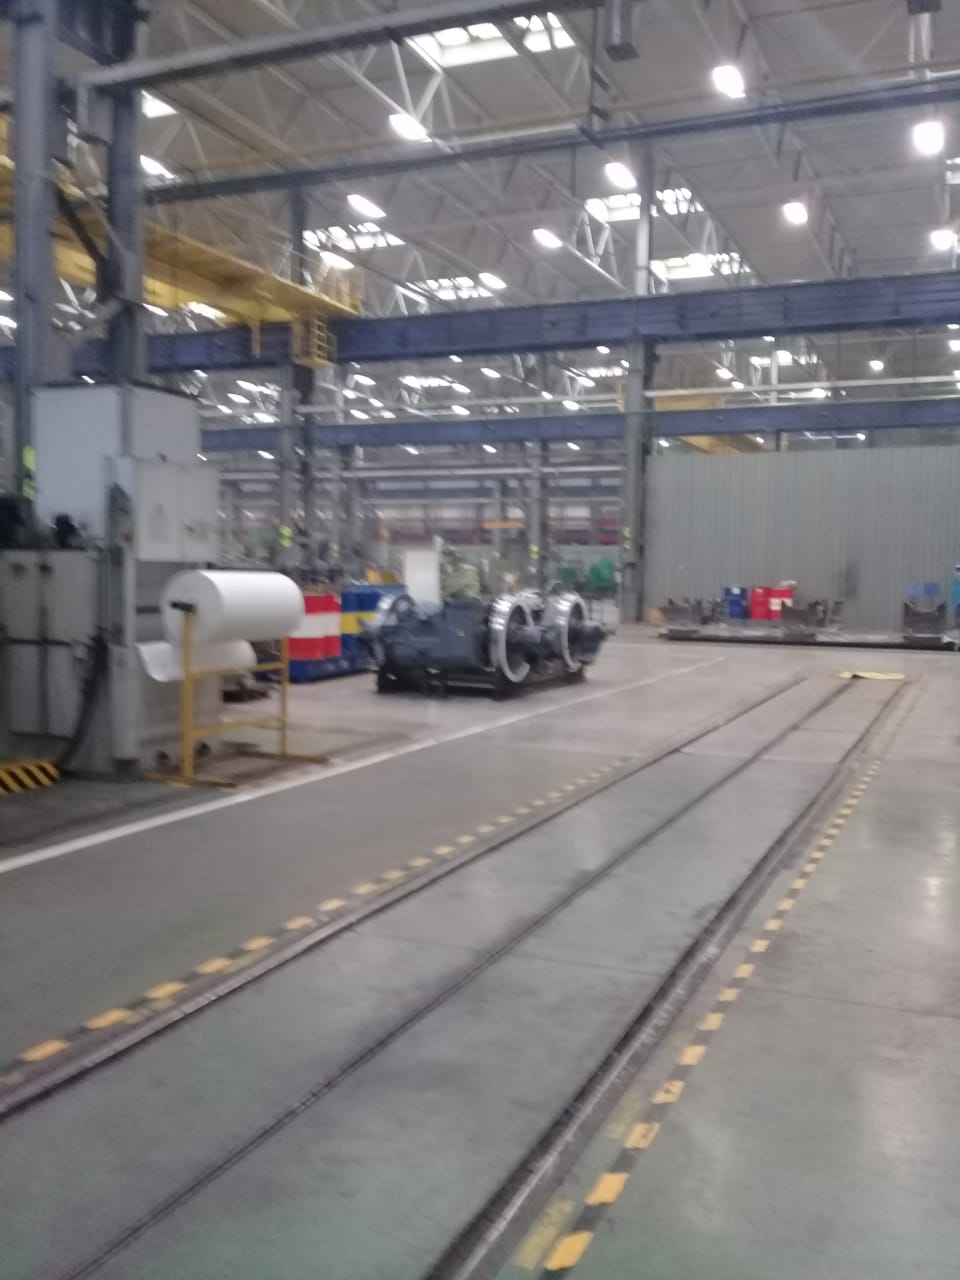  جولة لليوم السابع بمصنع جرارات السكة الحديد الروسى (11)